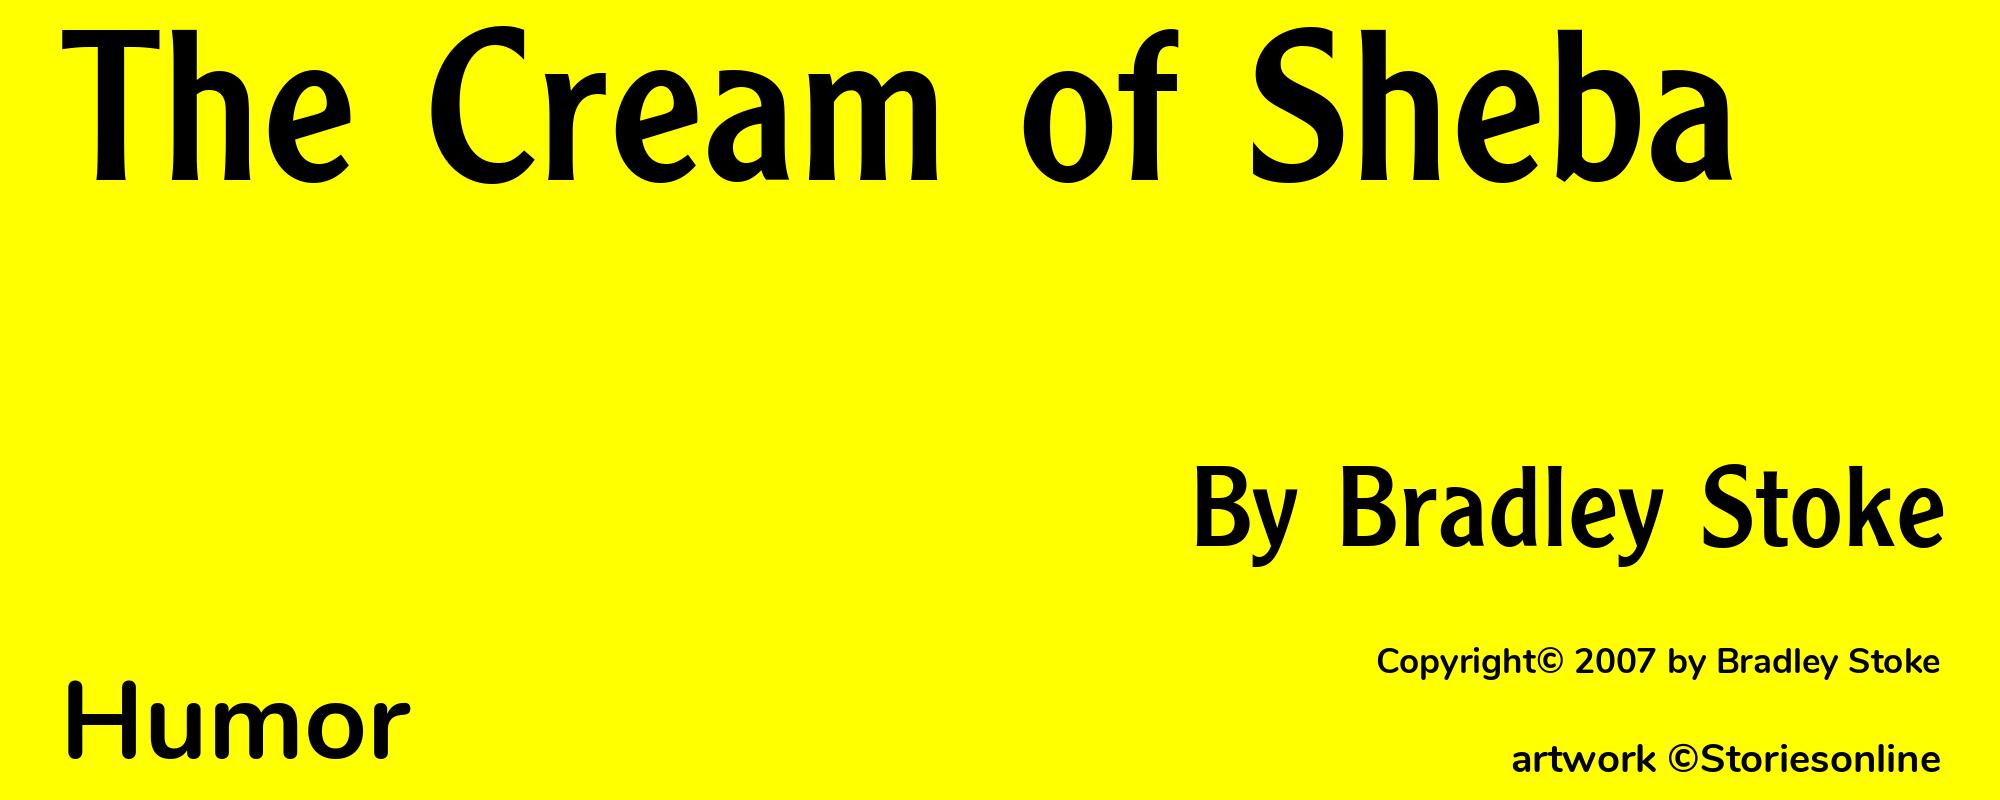 The Cream of Sheba - Cover